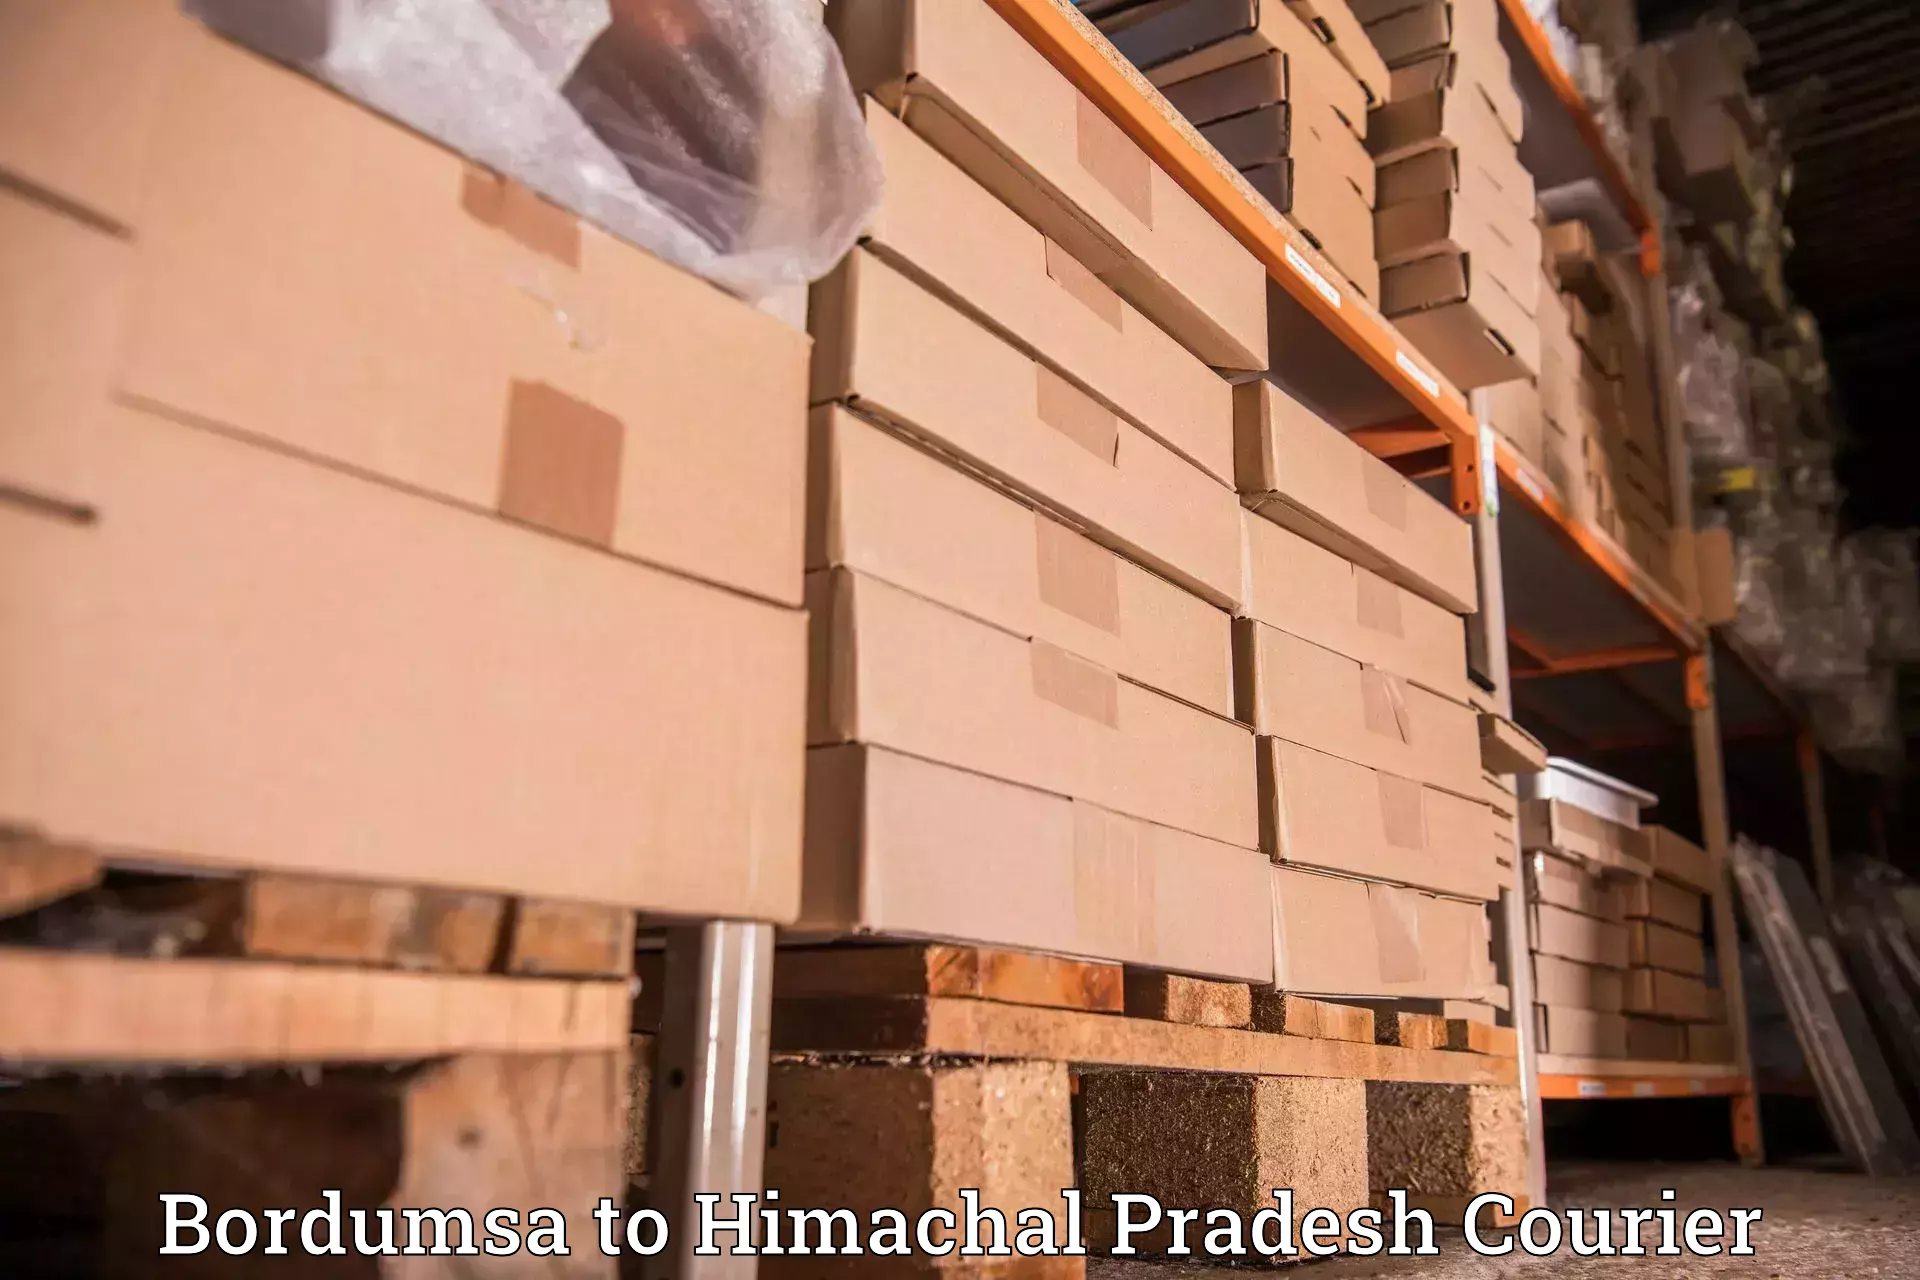 Global shipping solutions Bordumsa to Himachal Pradesh